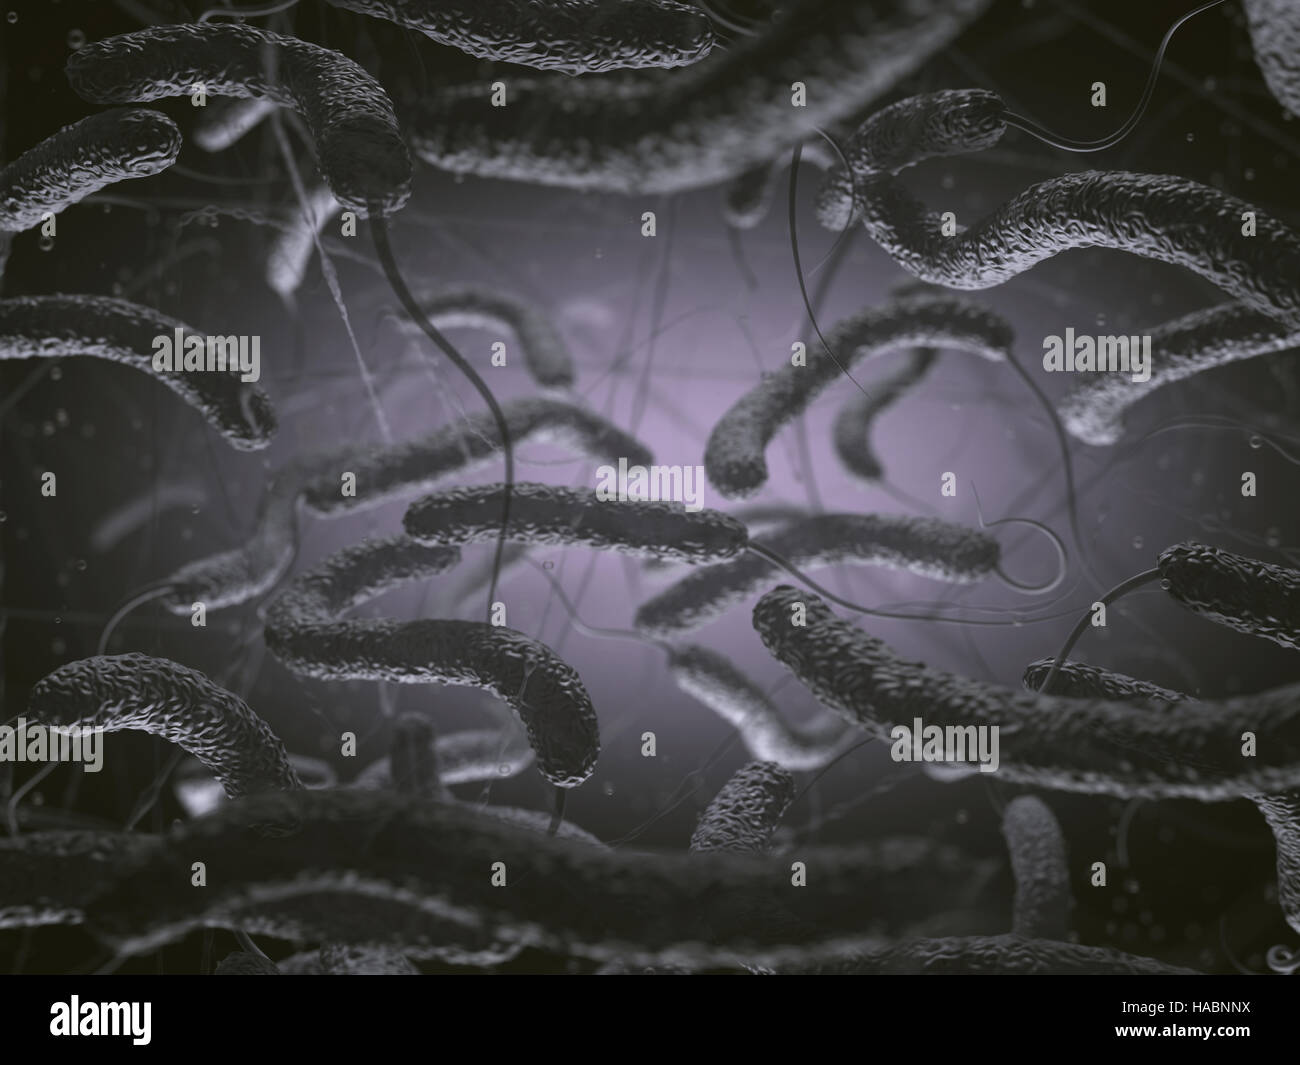 Vibrio cholerae, batteri Gram-negativi. 3D illustrazione di batteri con flagelli. Foto Stock